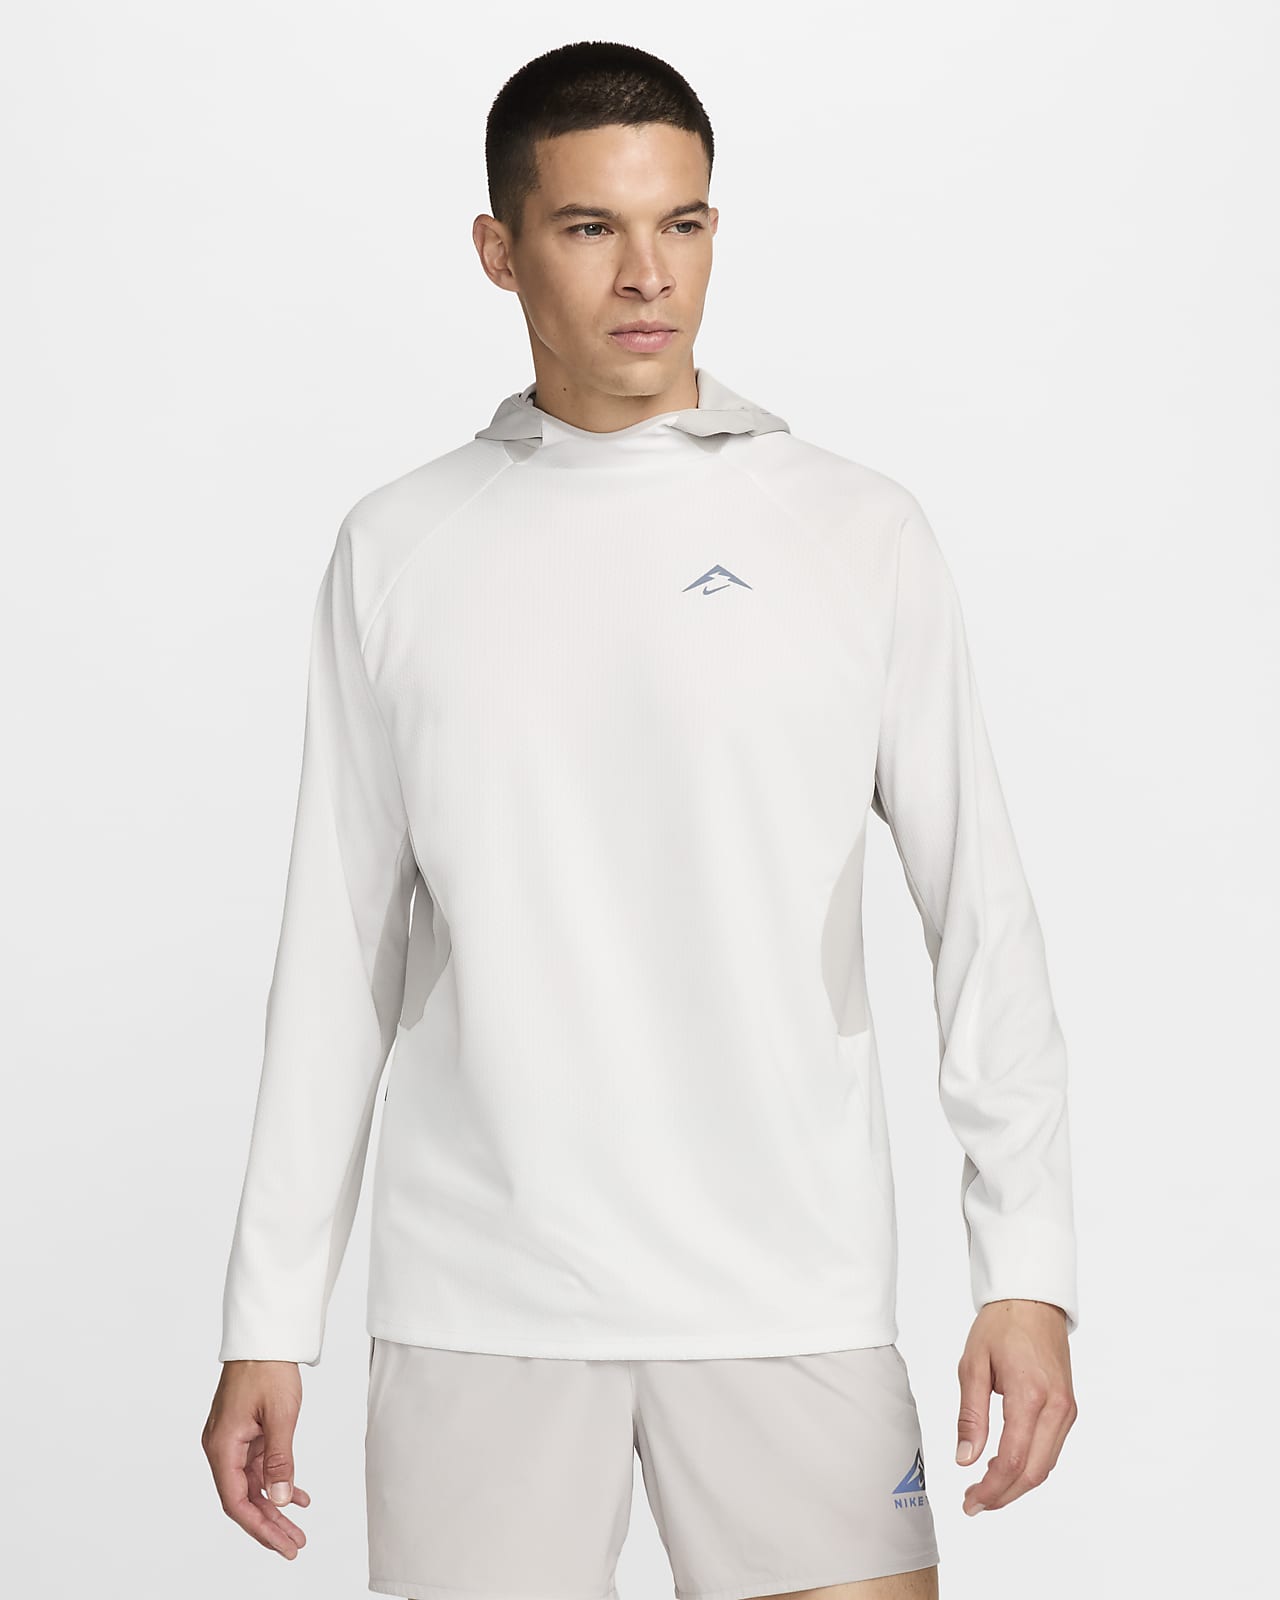 Męska koszulka z kapturem i długim rękawem do biegania Dri-FIT UV Nike Trail